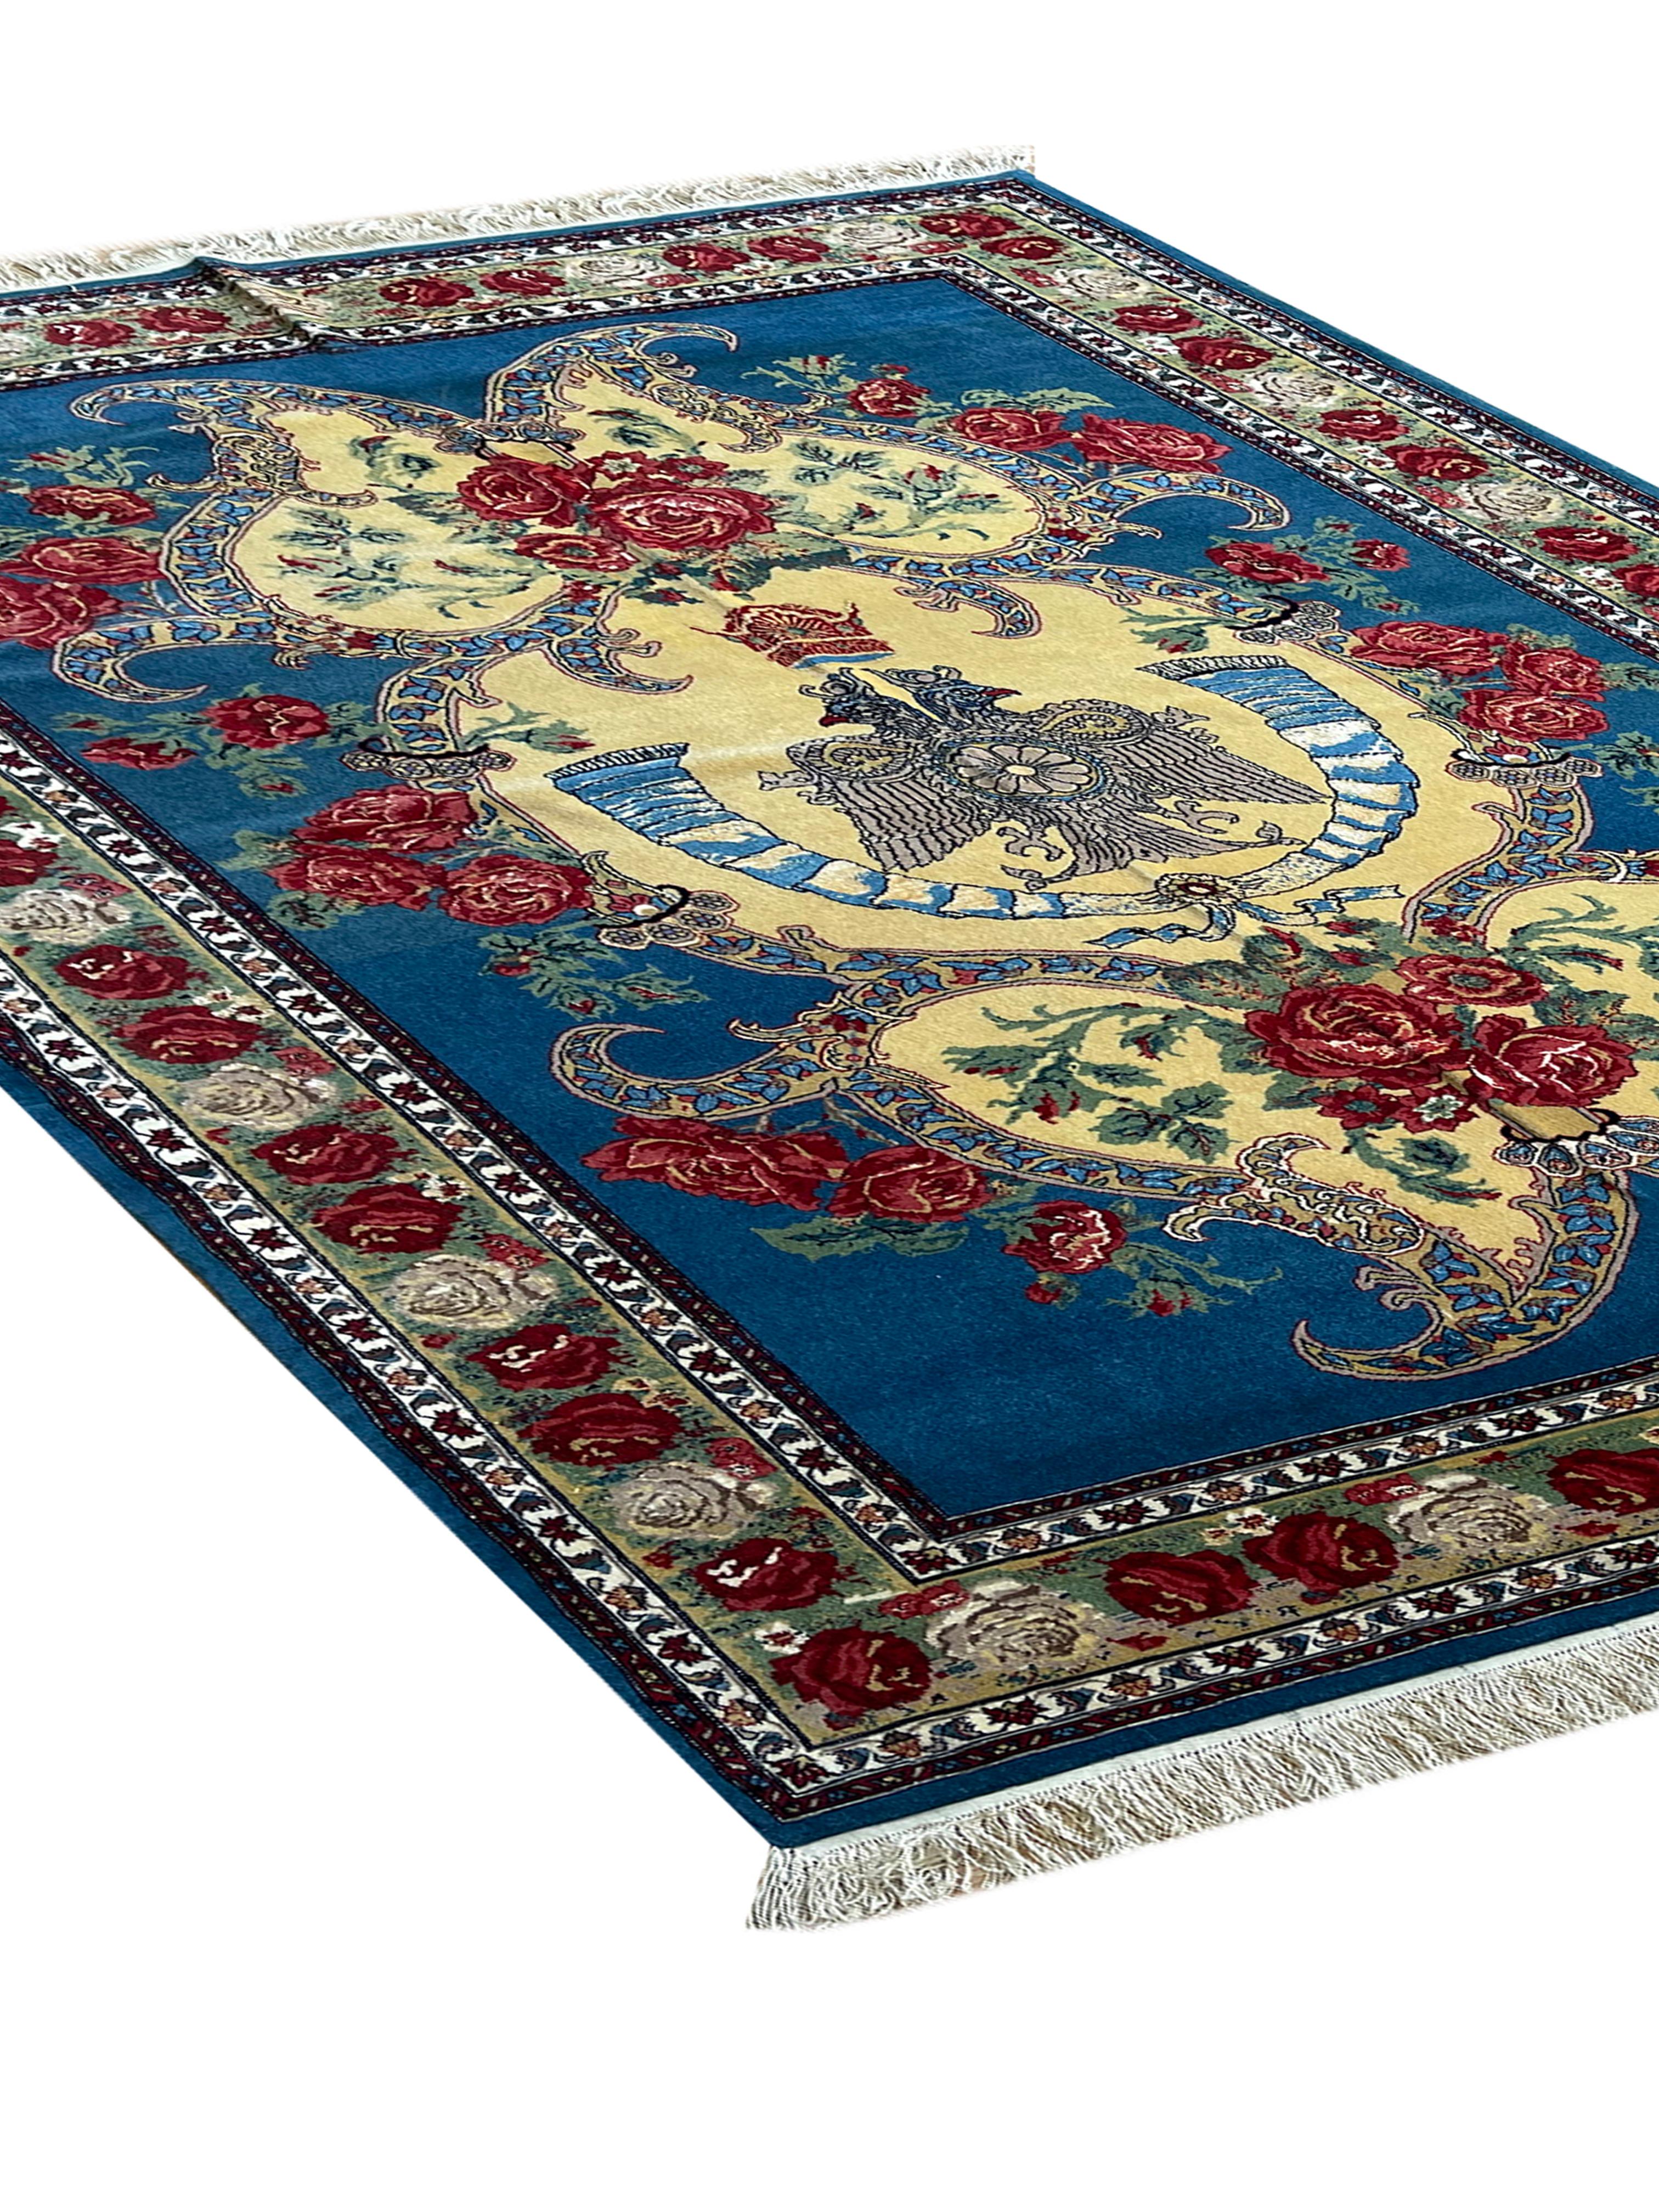 Art déco Tapis à fleurs exclusif, tapis bleu en soie tissé à la main, tapis oriental kurde symbolique en vente